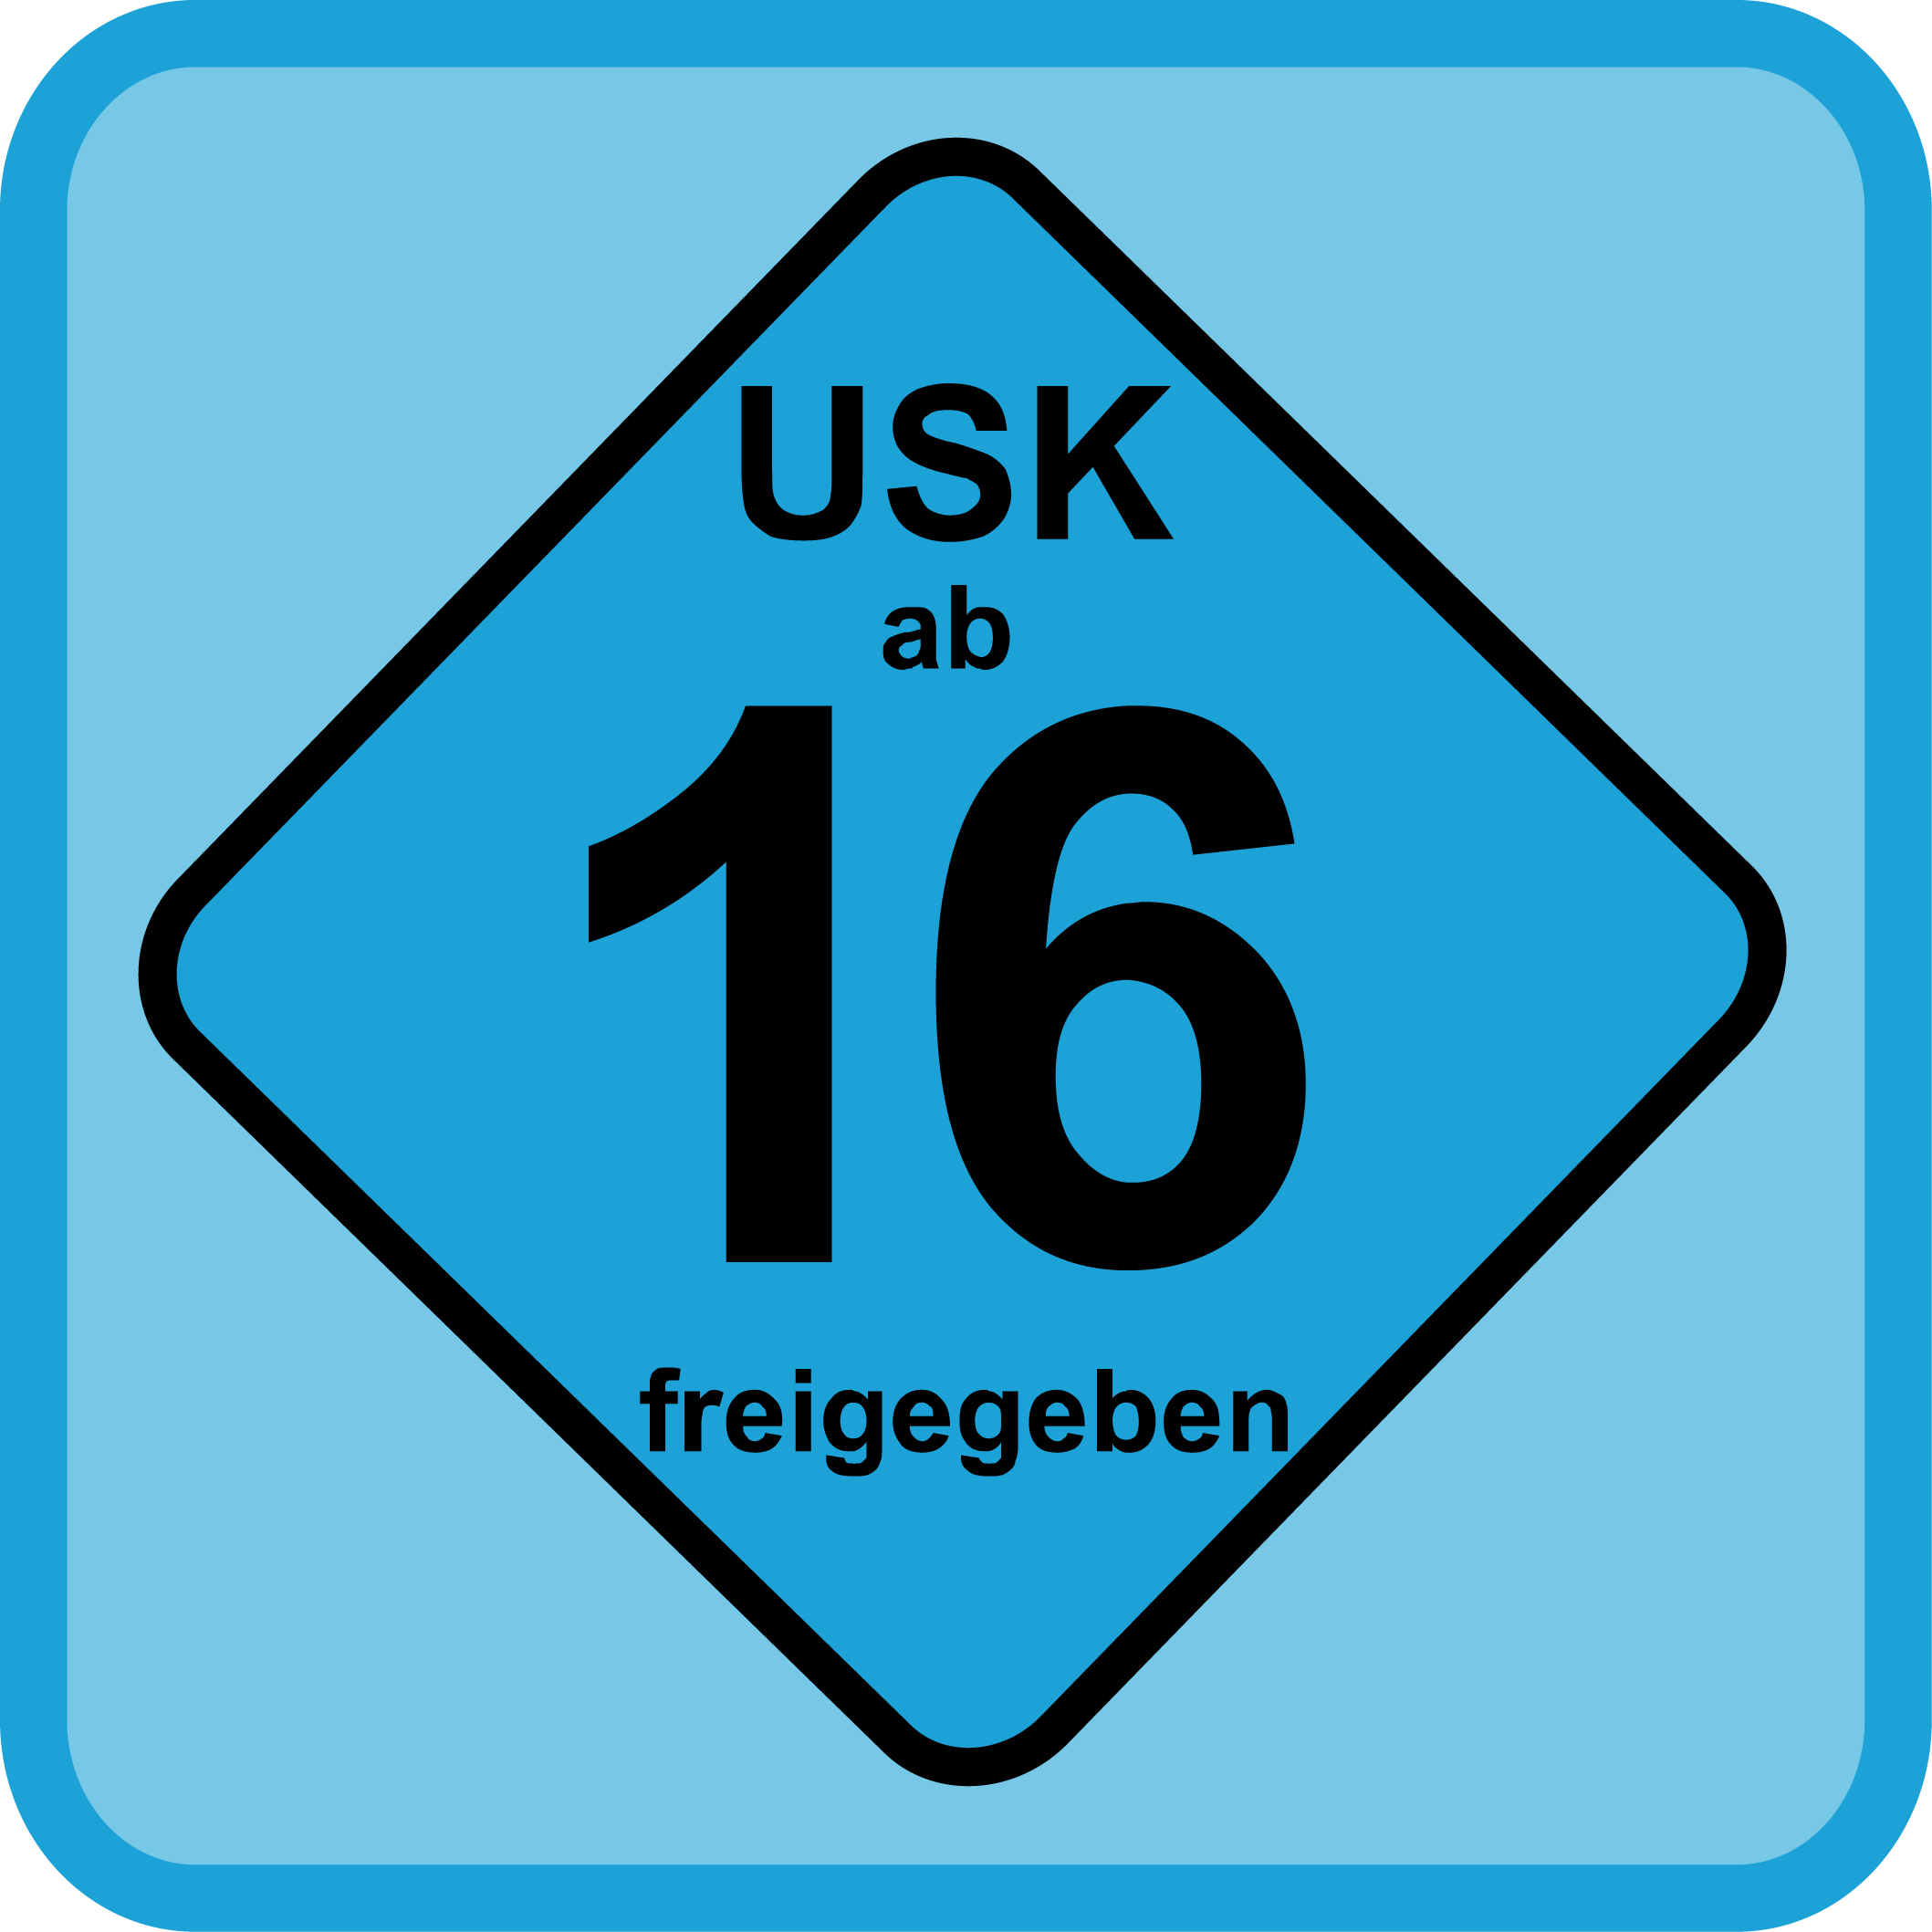 Usk16